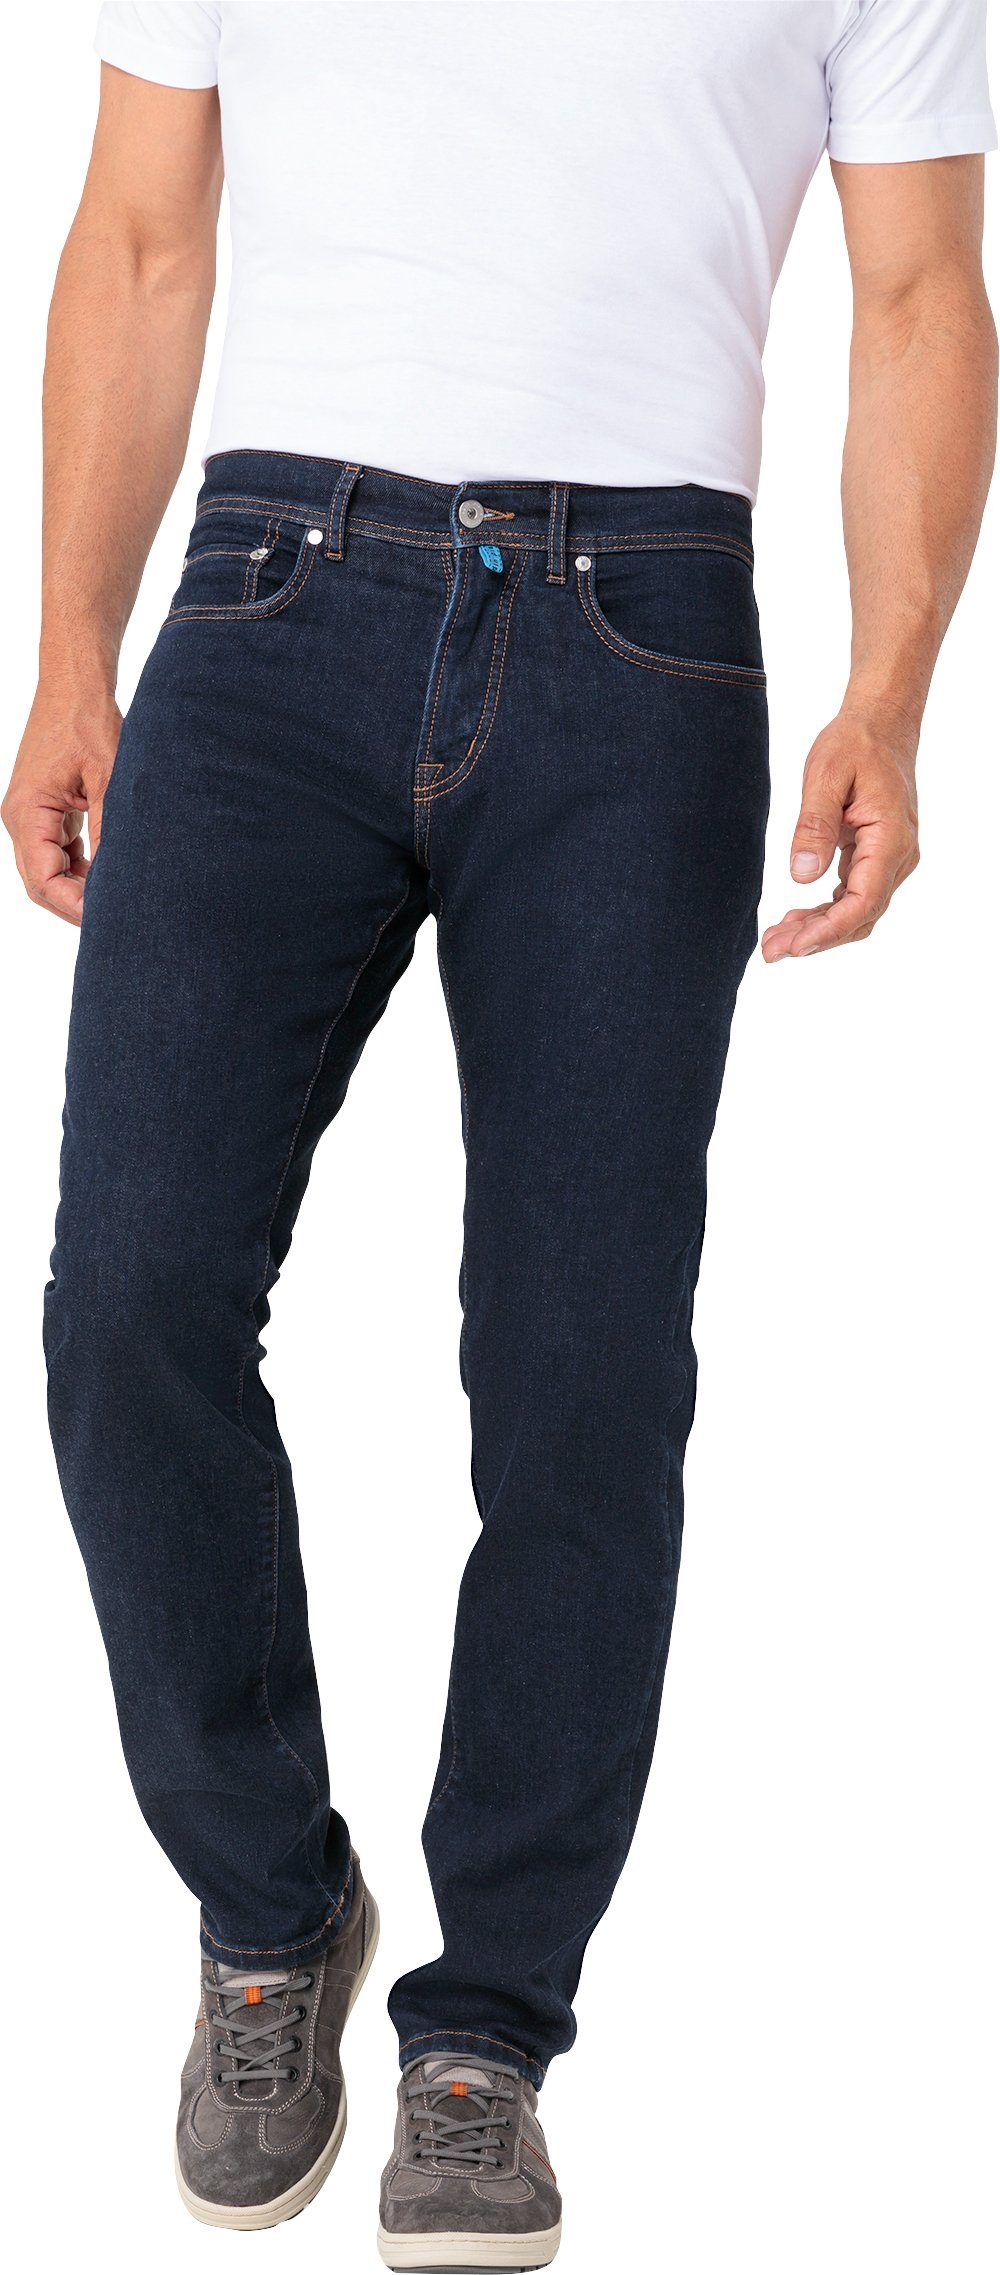 Pierre schwarz Stretch-Jeans 5-Pocket-Style Cardin